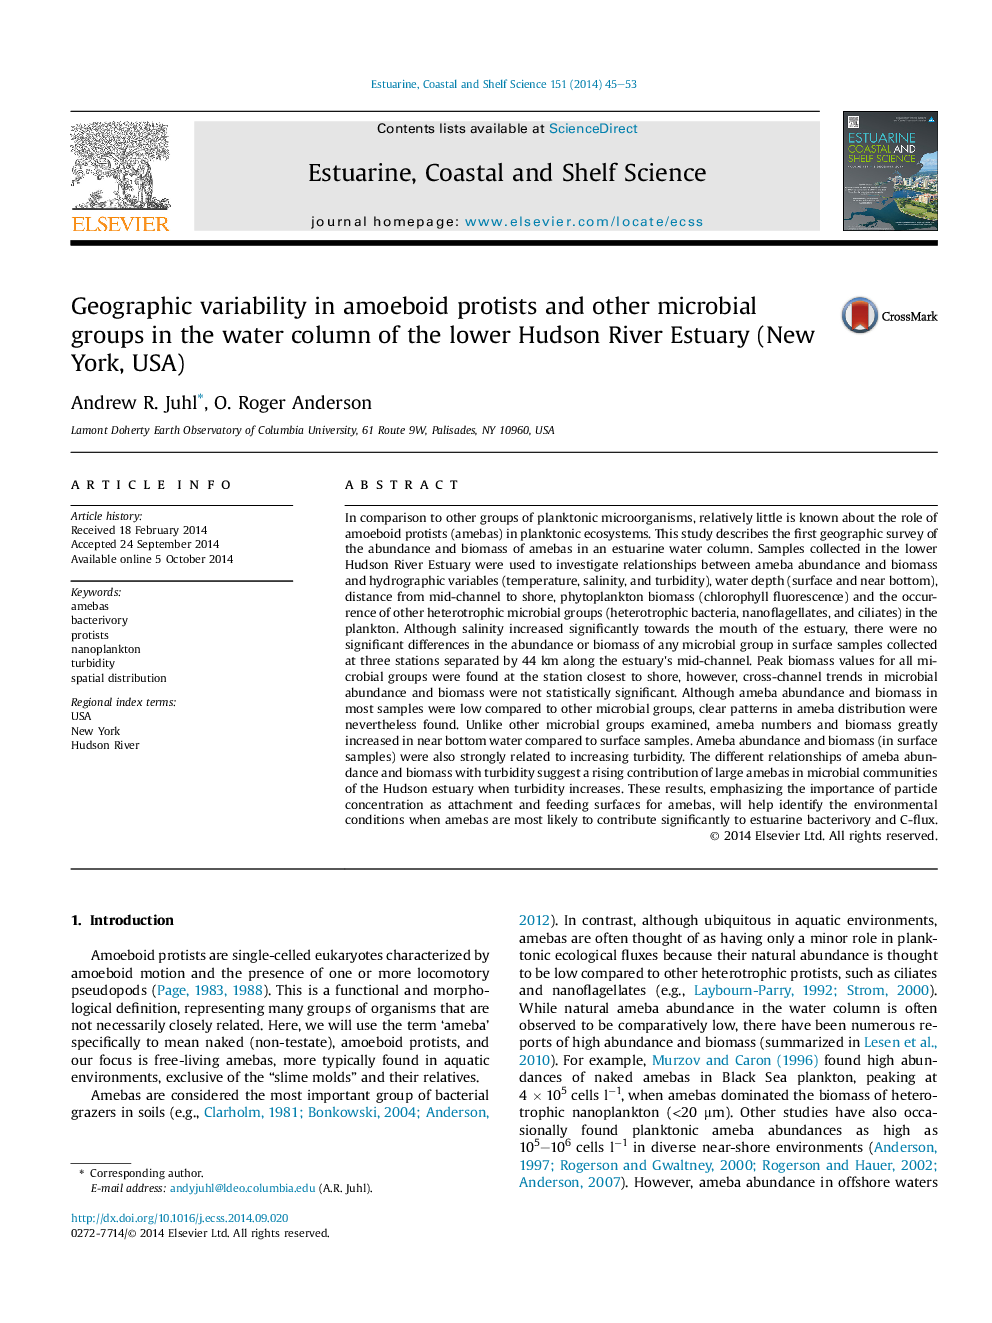 تنوع جغرافیایی در پروتئین آمیبوئید و دیگر گروه های میکروبی در ستون آب رودخانه هادسون (نیویورک، ایالات متحده آمریکا) 